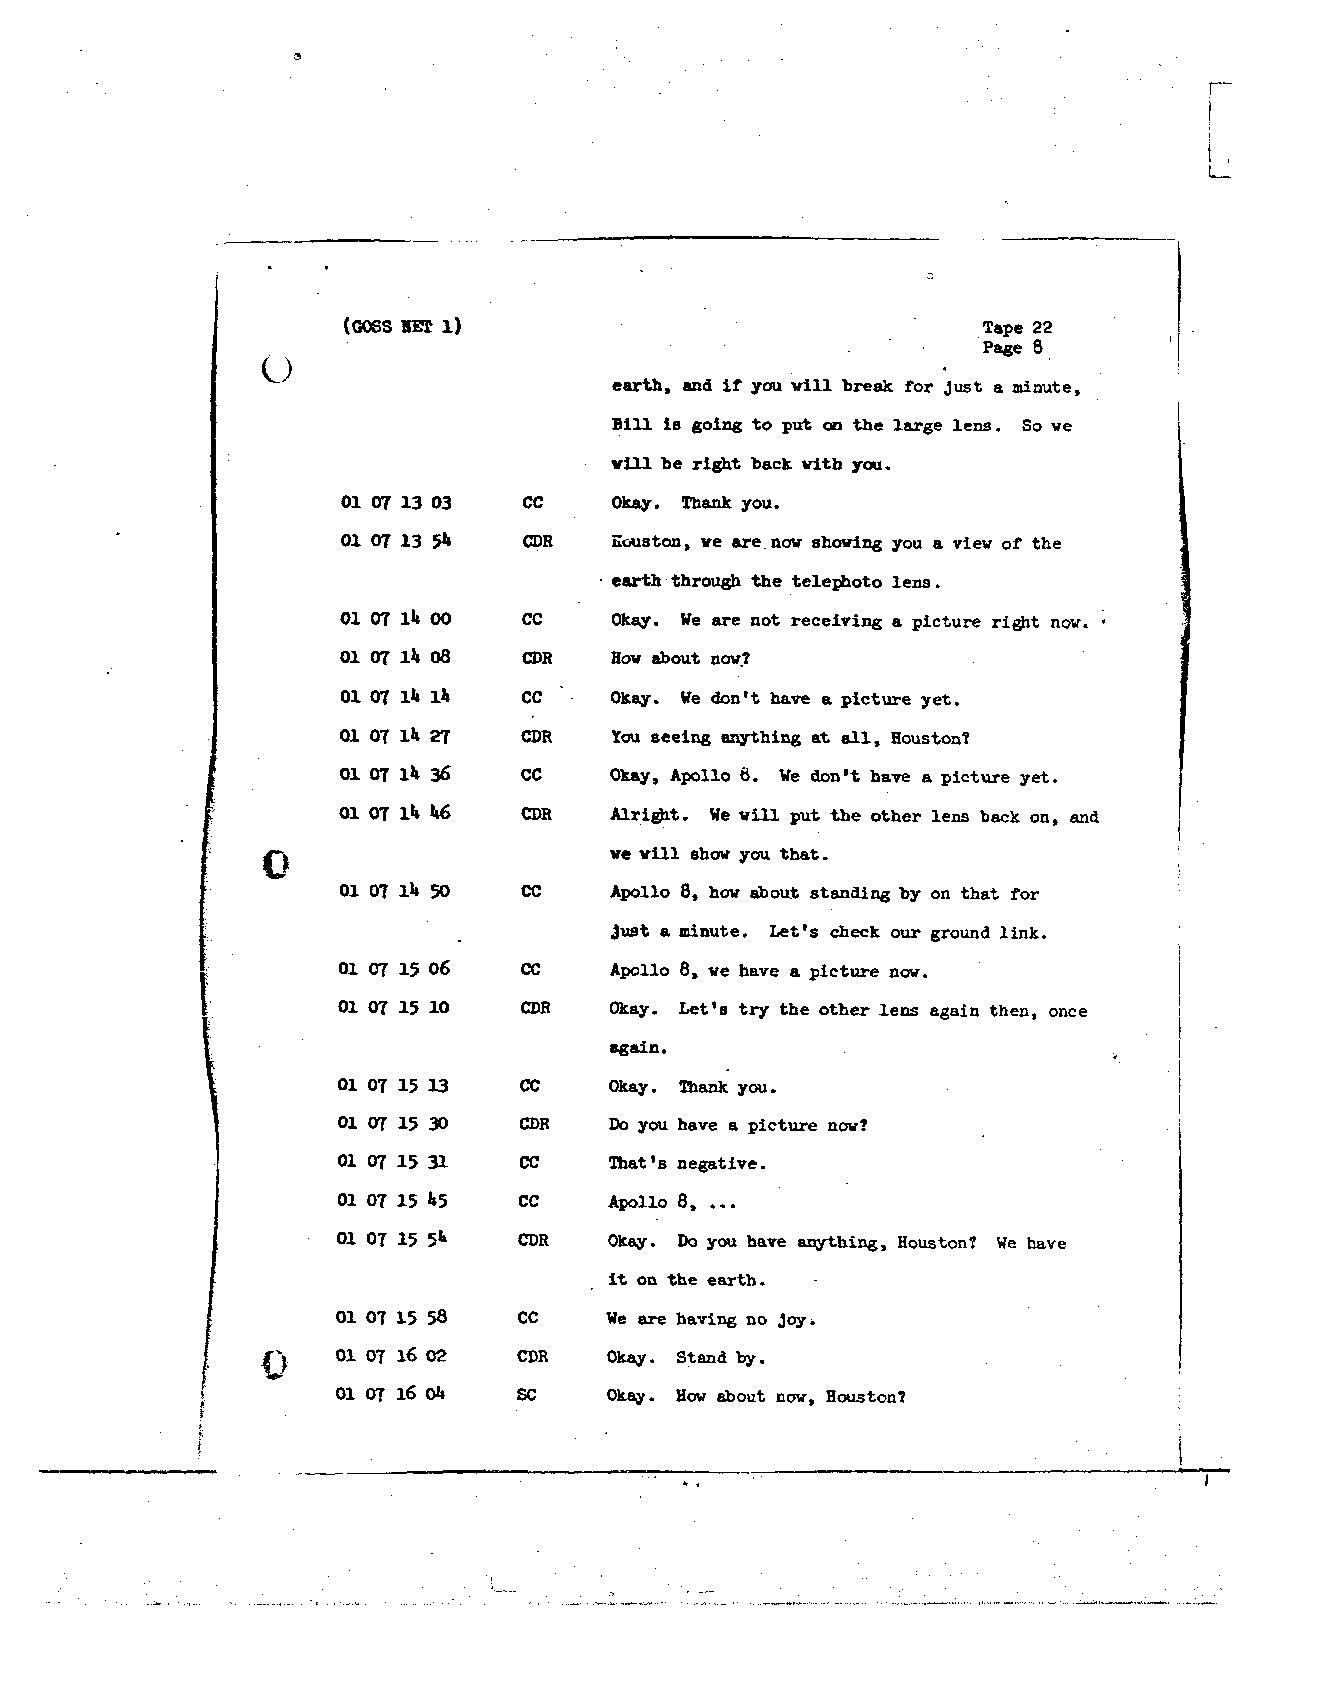 Page 171 of Apollo 8’s original transcript